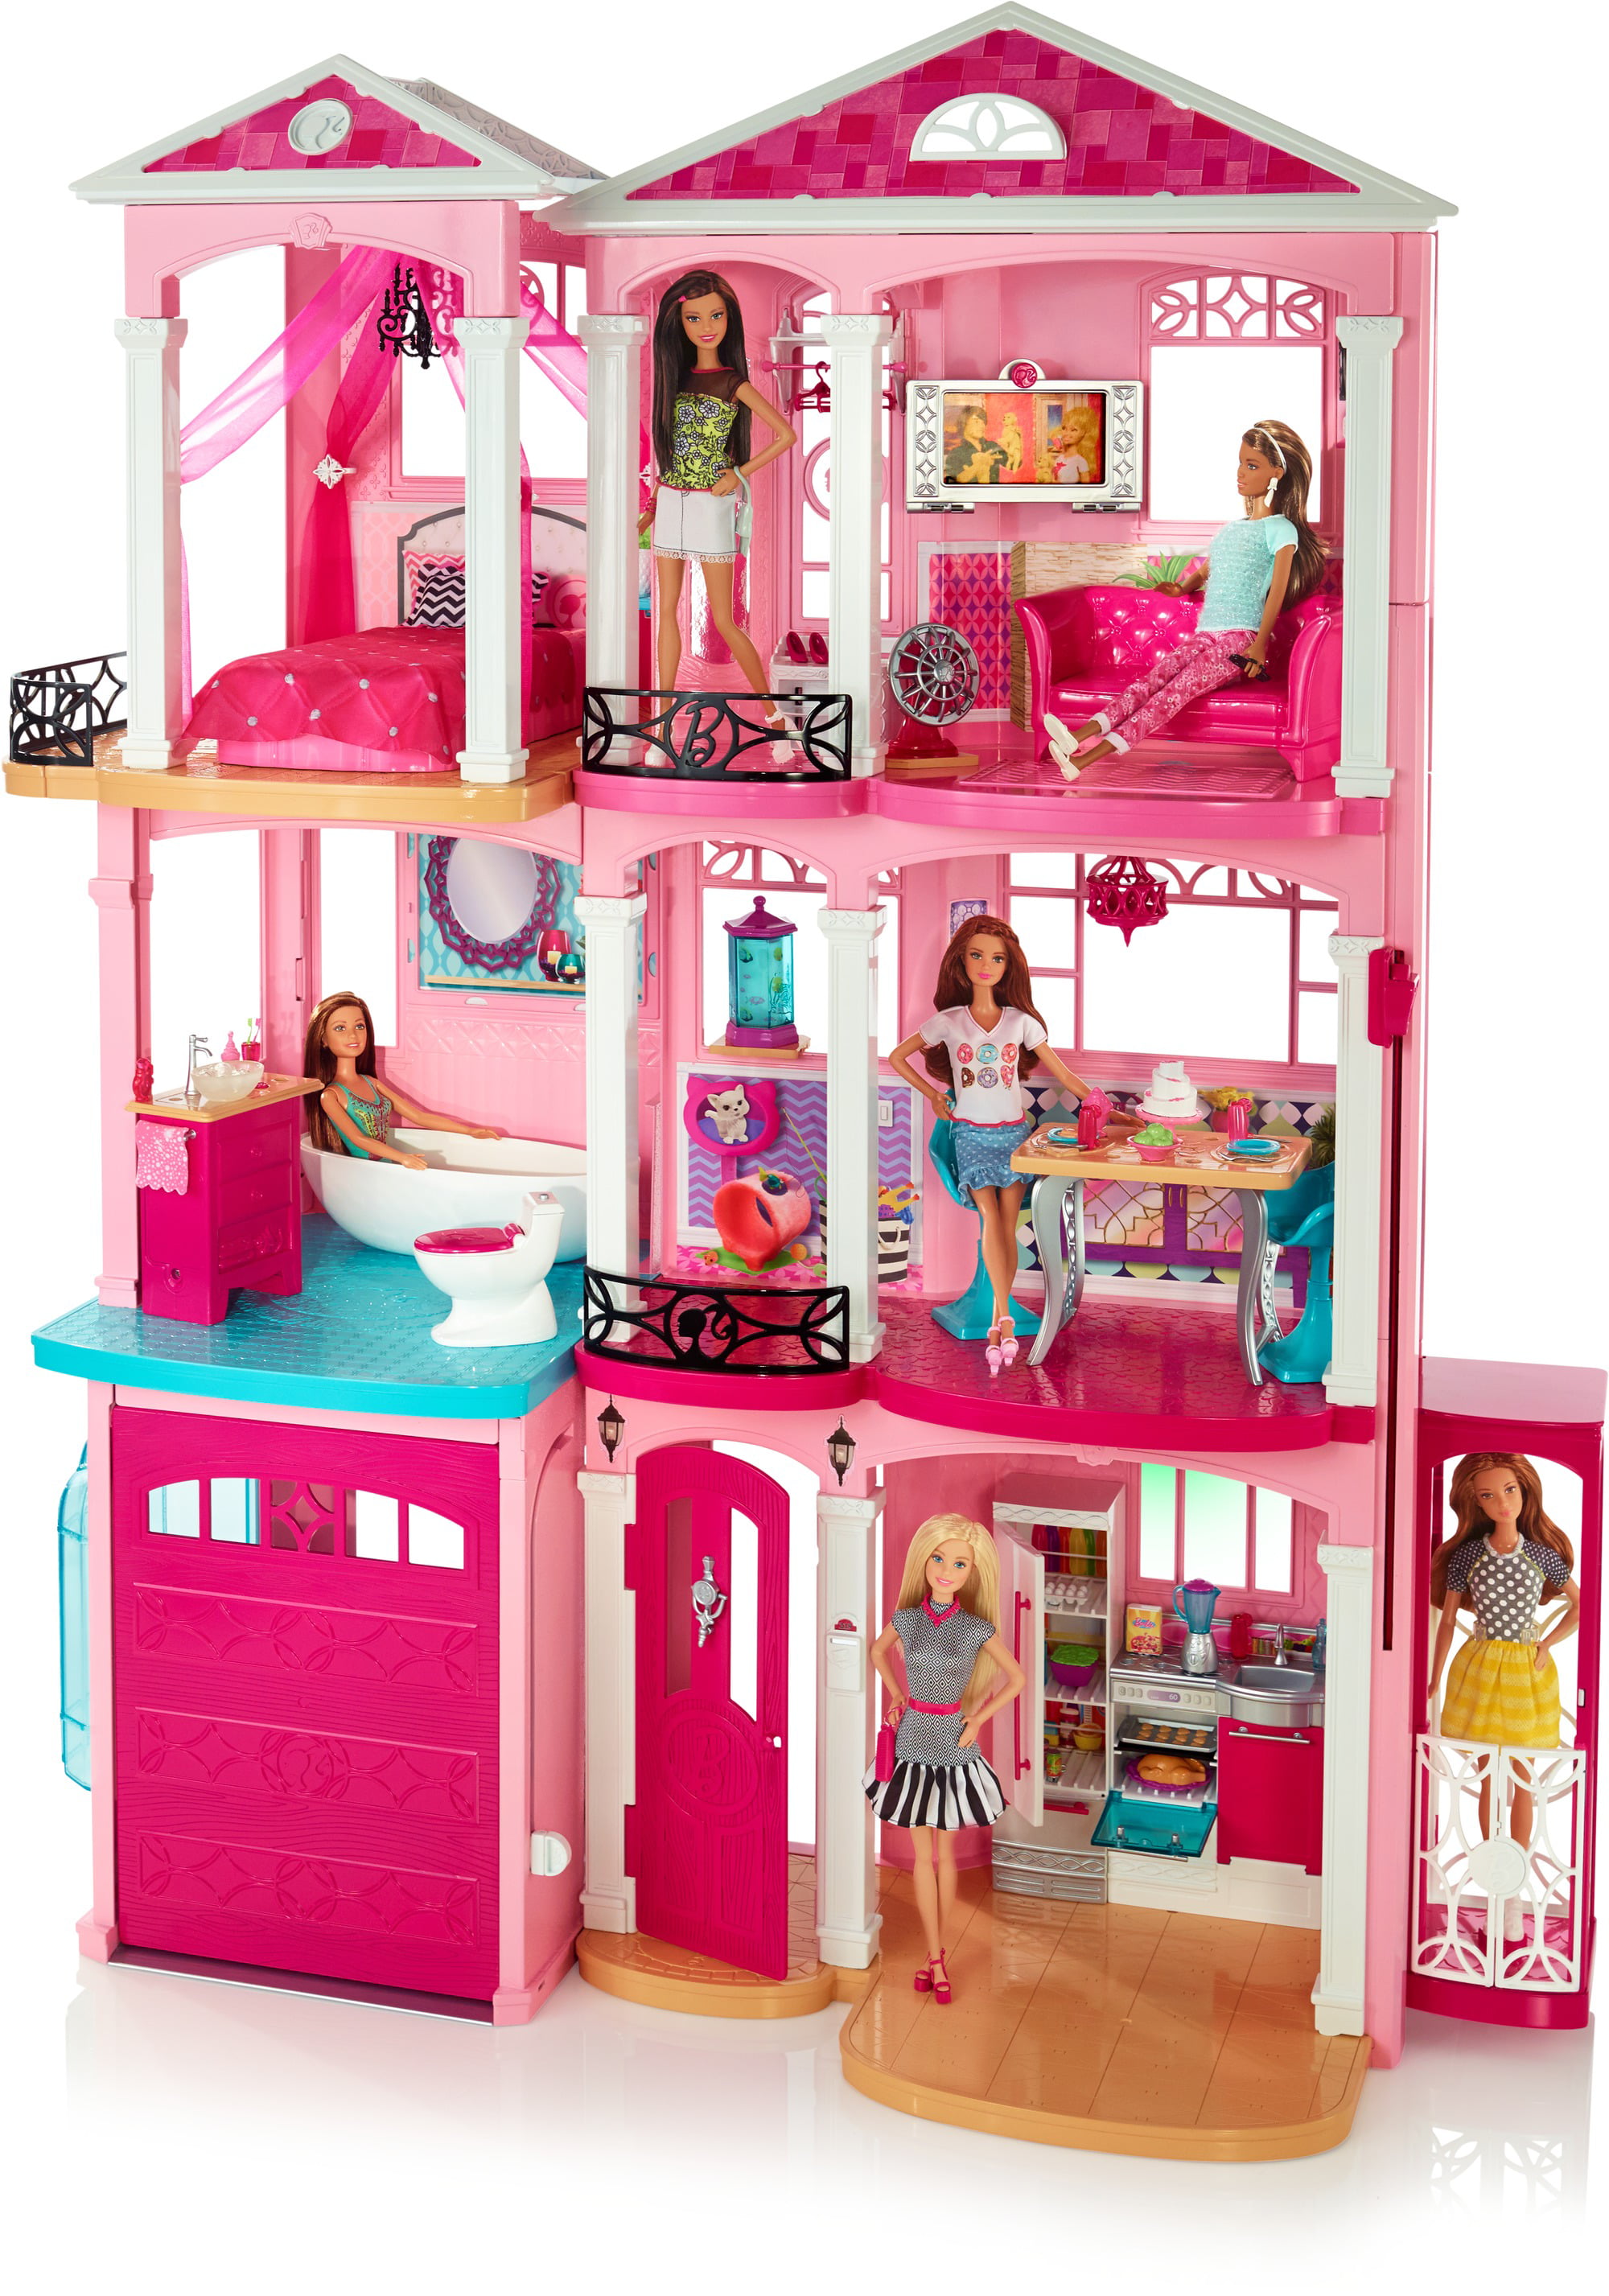 Año nuevo Interior Correo Barbie Estate DreamHouse Playset with 70+ Accessory Pieces - Walmart.com